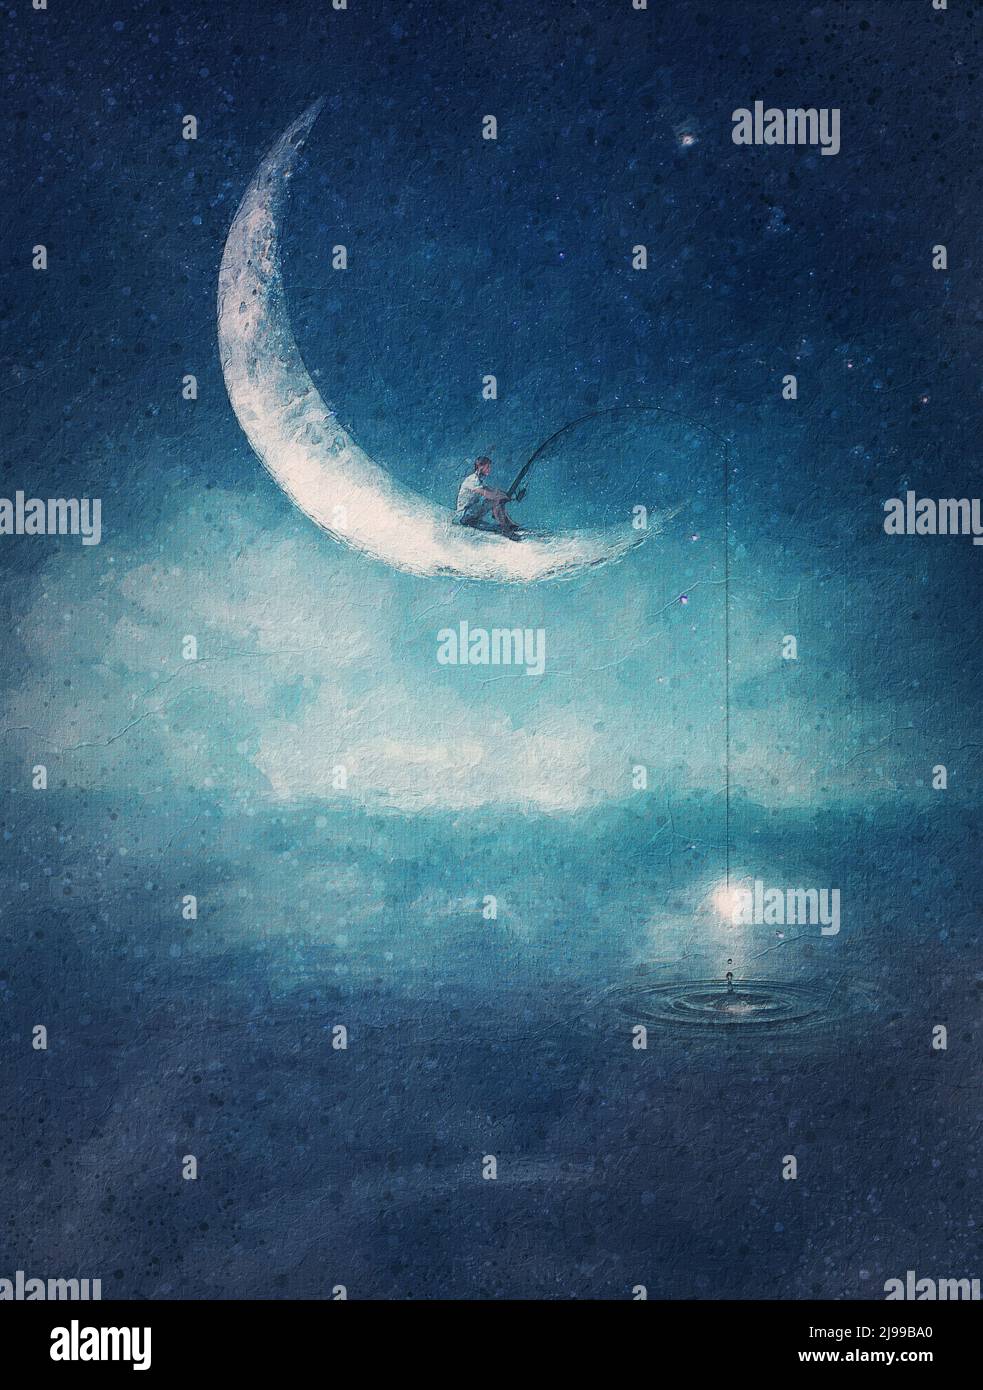 Peinture surréaliste d'un garçon pêchant des étoiles, assis sur un croissant de lune avec une tige dans ses mains. Concept d'aventure magique. Magnifique ciel étoilé Banque D'Images